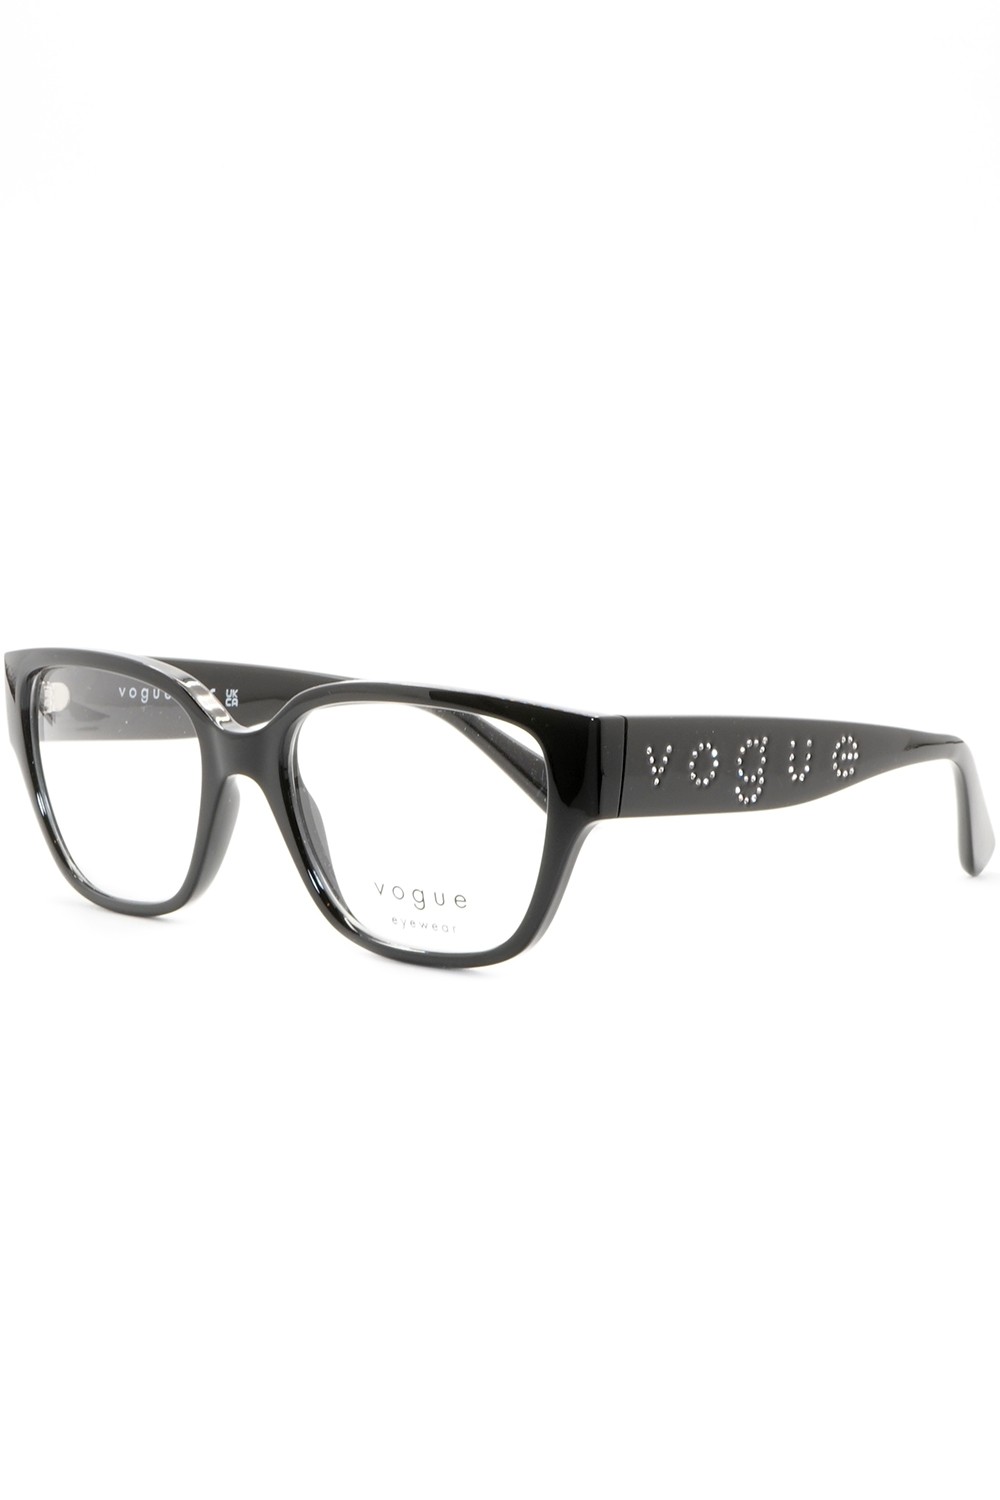 Vogue - Occhiali da vista in celluloide squadrati per donna nero - VO5458B W44